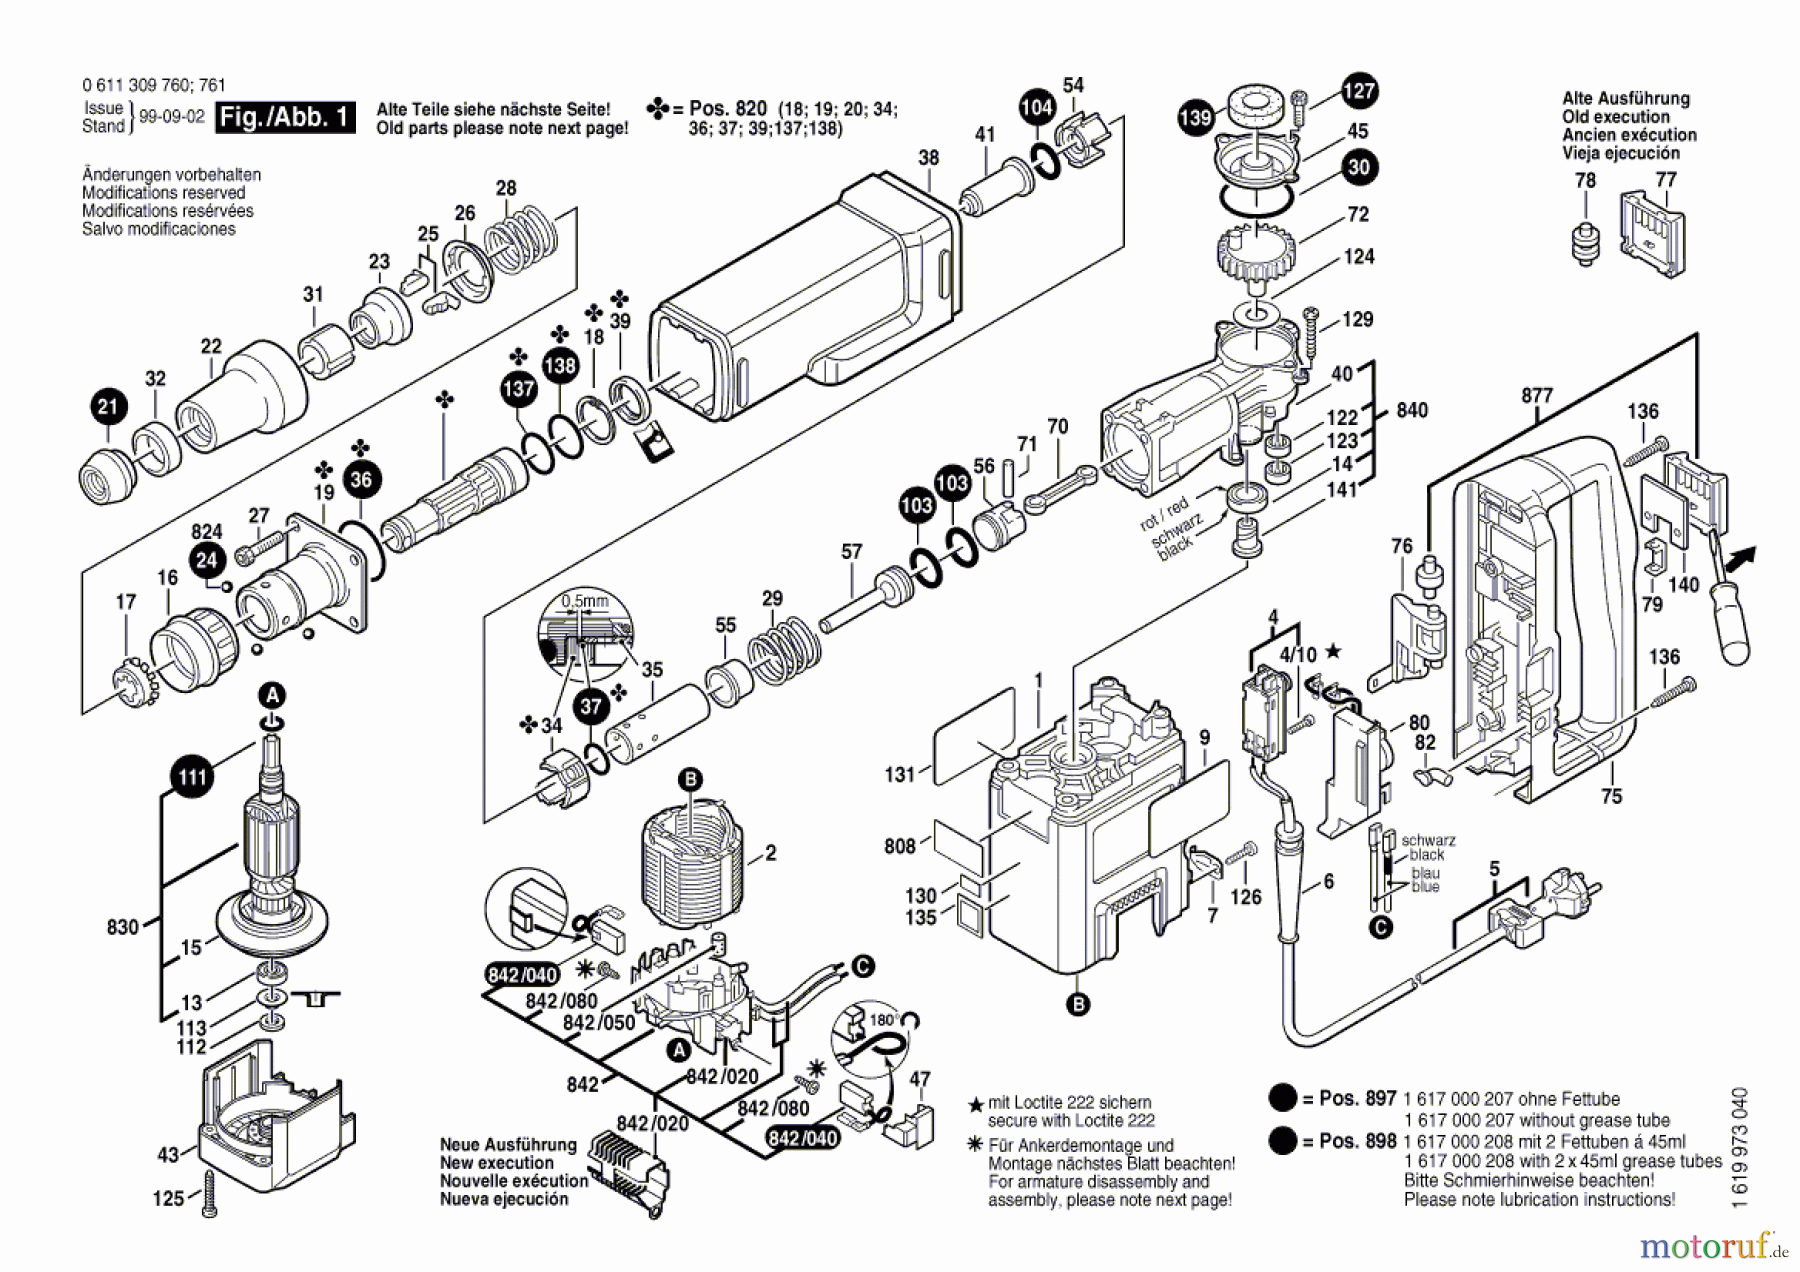  Bosch Werkzeug Schlaghammer MH 12 E Seite 1